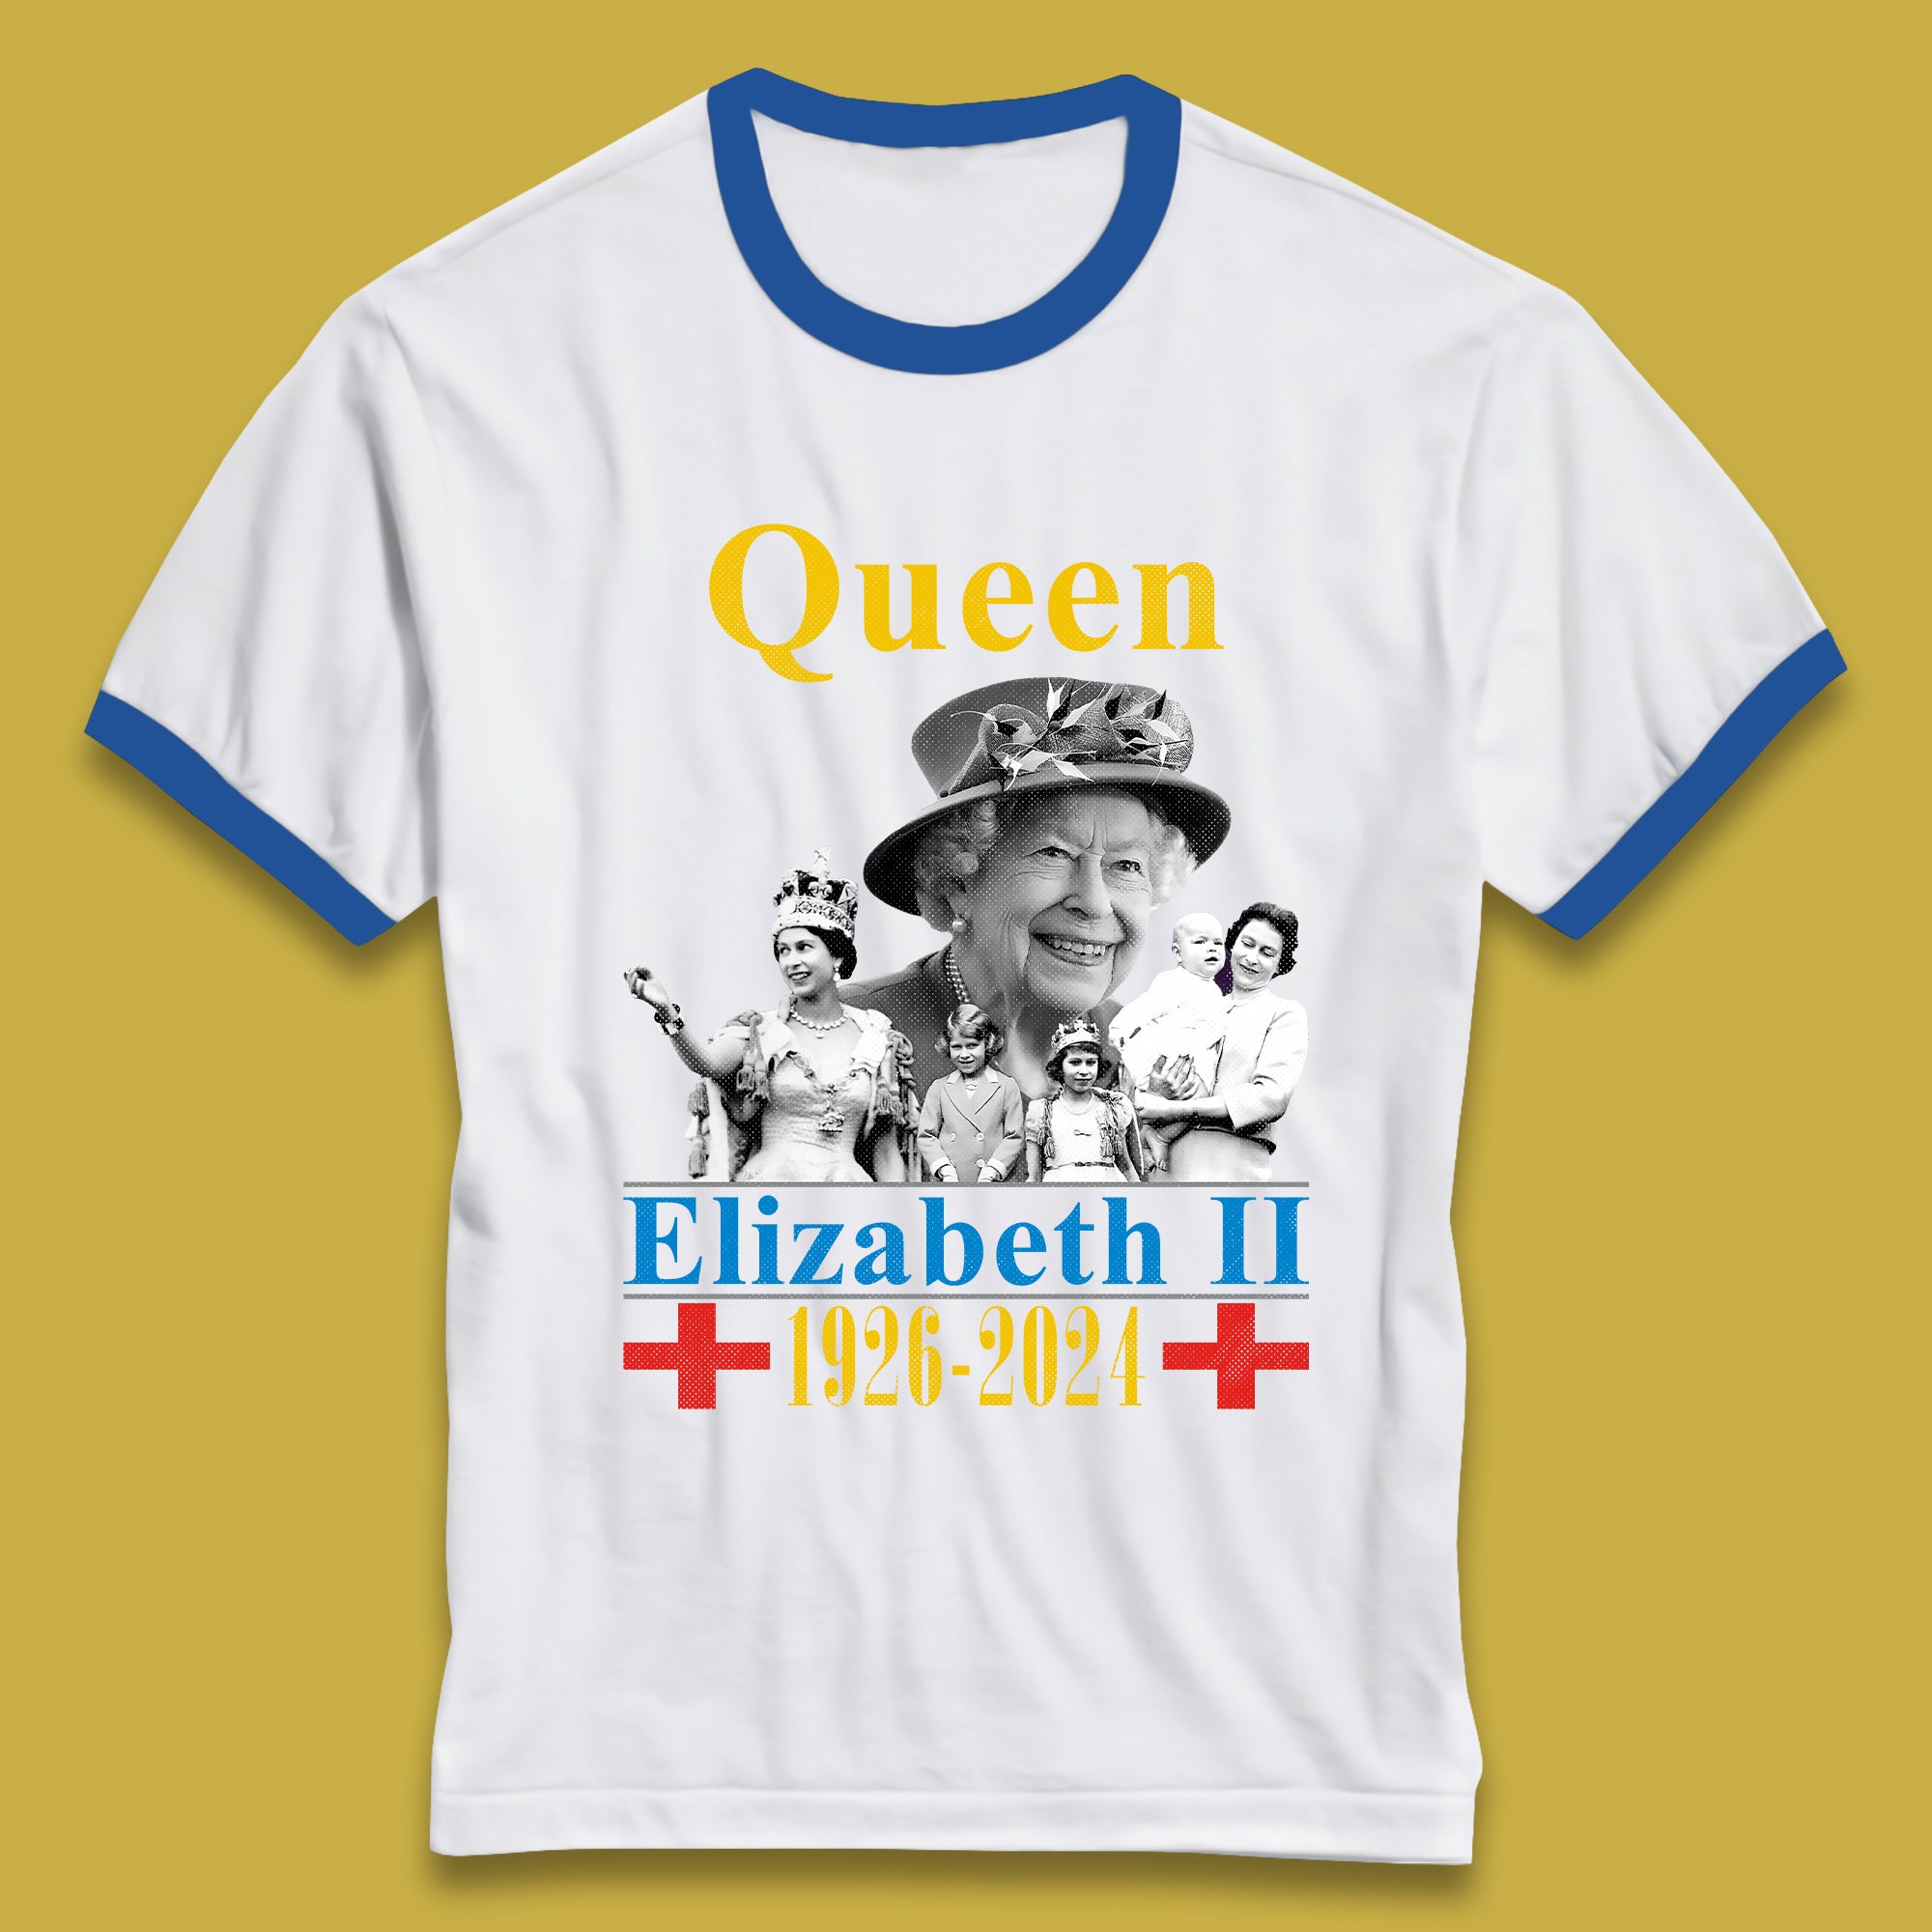 Queen Elizabeth II Ringer T-Shirt